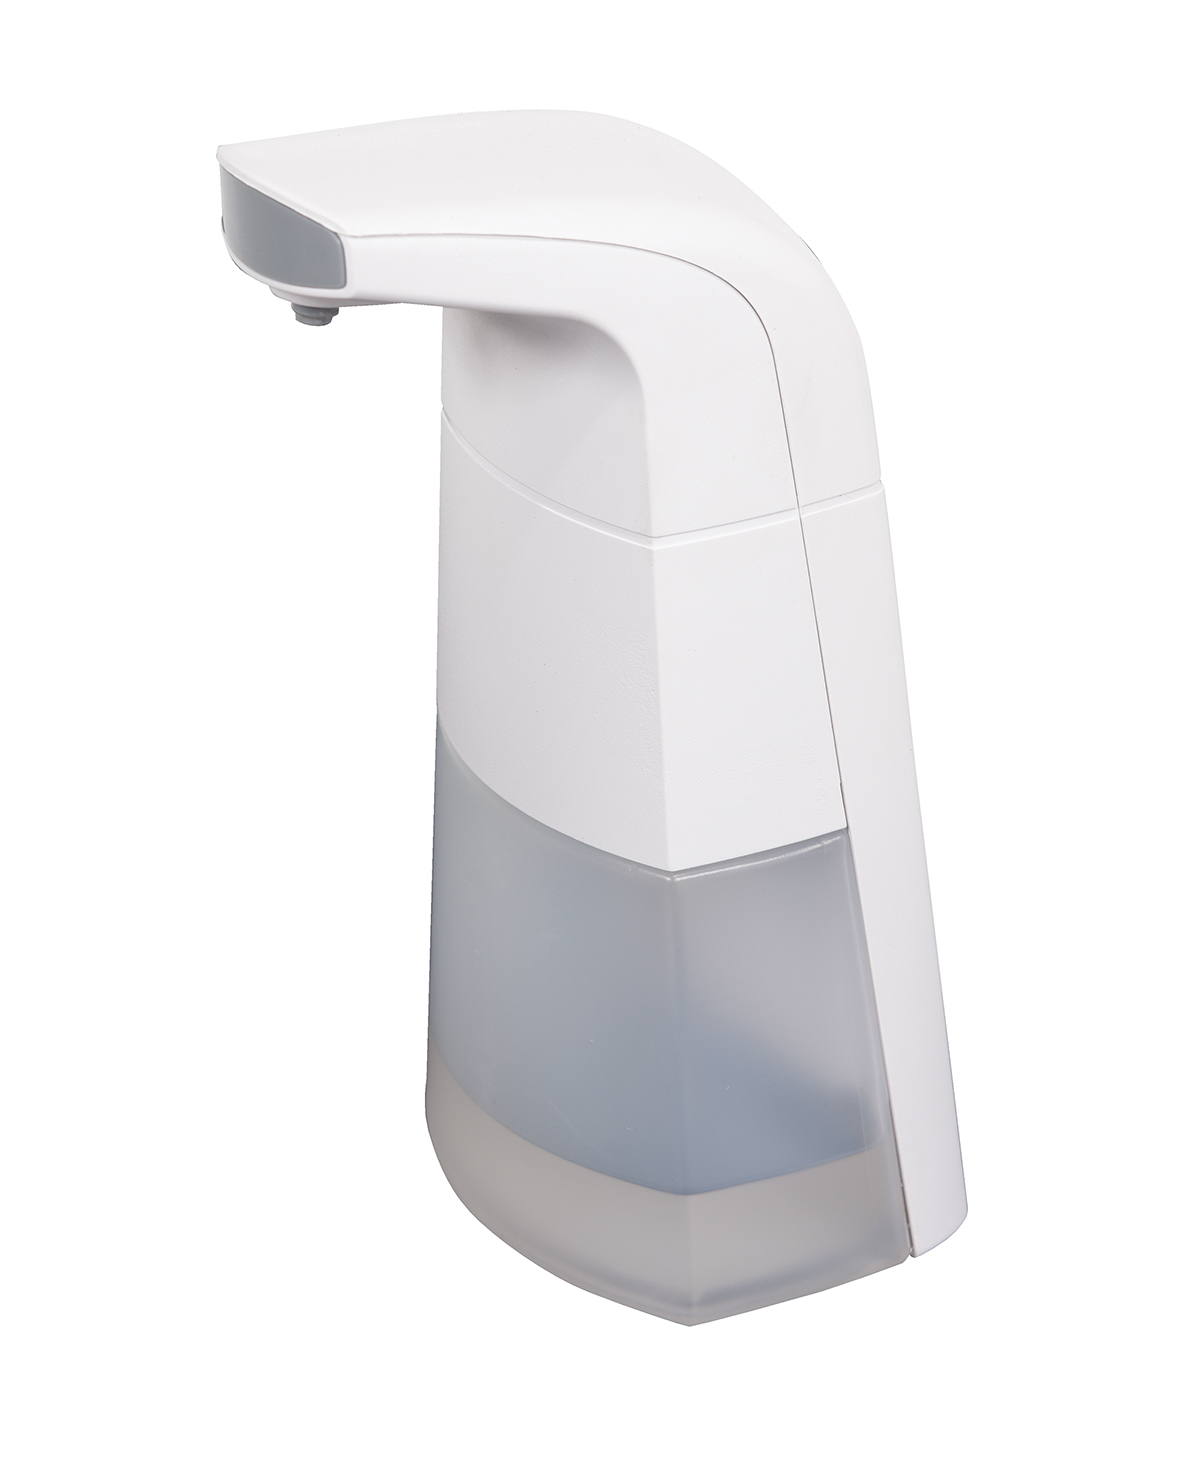 Vestil Automatic Liquid Sanitizer Dispenser Model No. PHS-ALSD-01